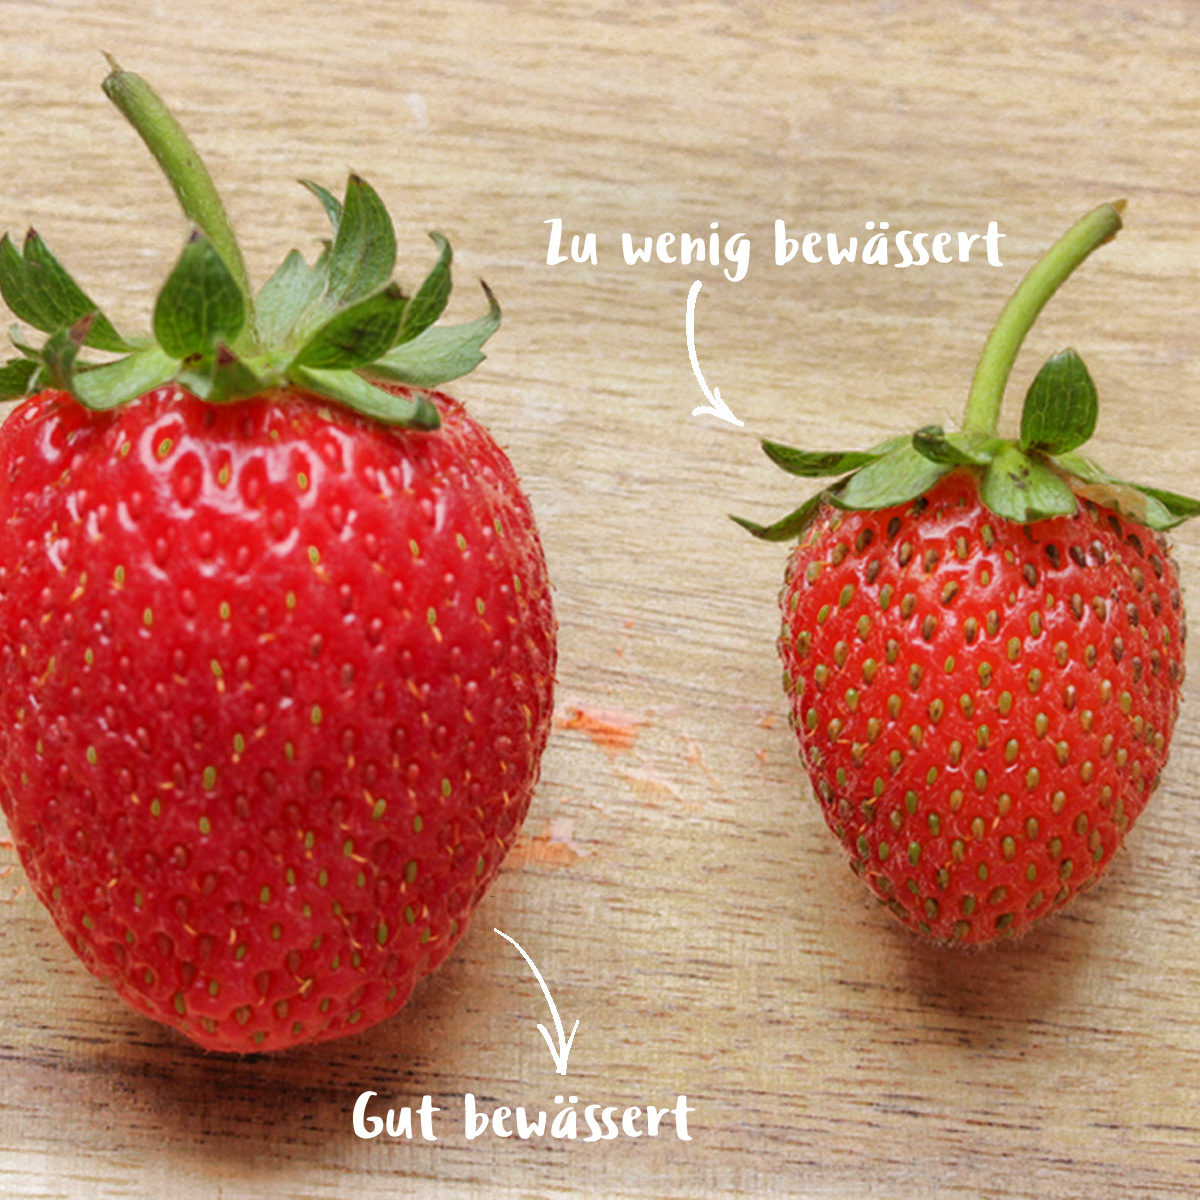 Erdbeeren bewässern gut, zu wenig.jpg